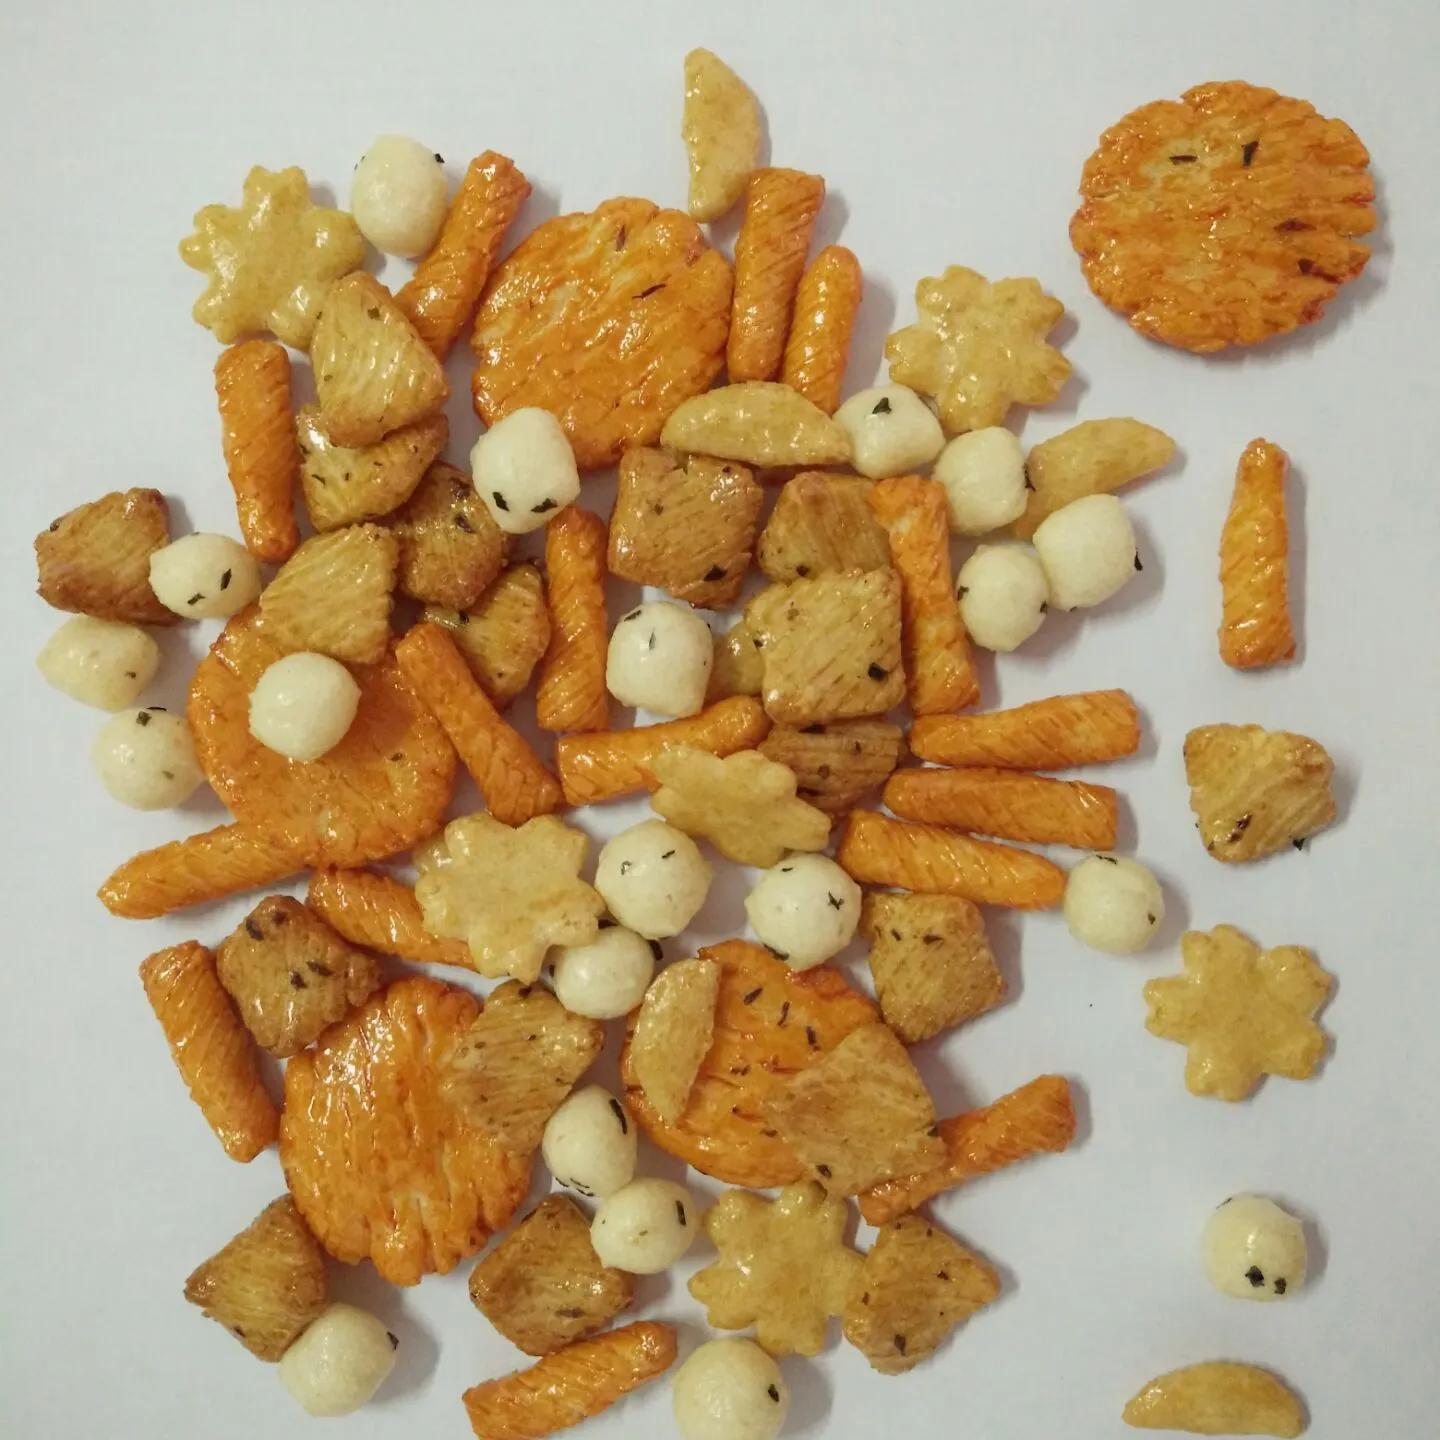 Deliziosi cracker di riso arrostiti colorati croccanti a basso contenuto di grassi popolari di diverse forme